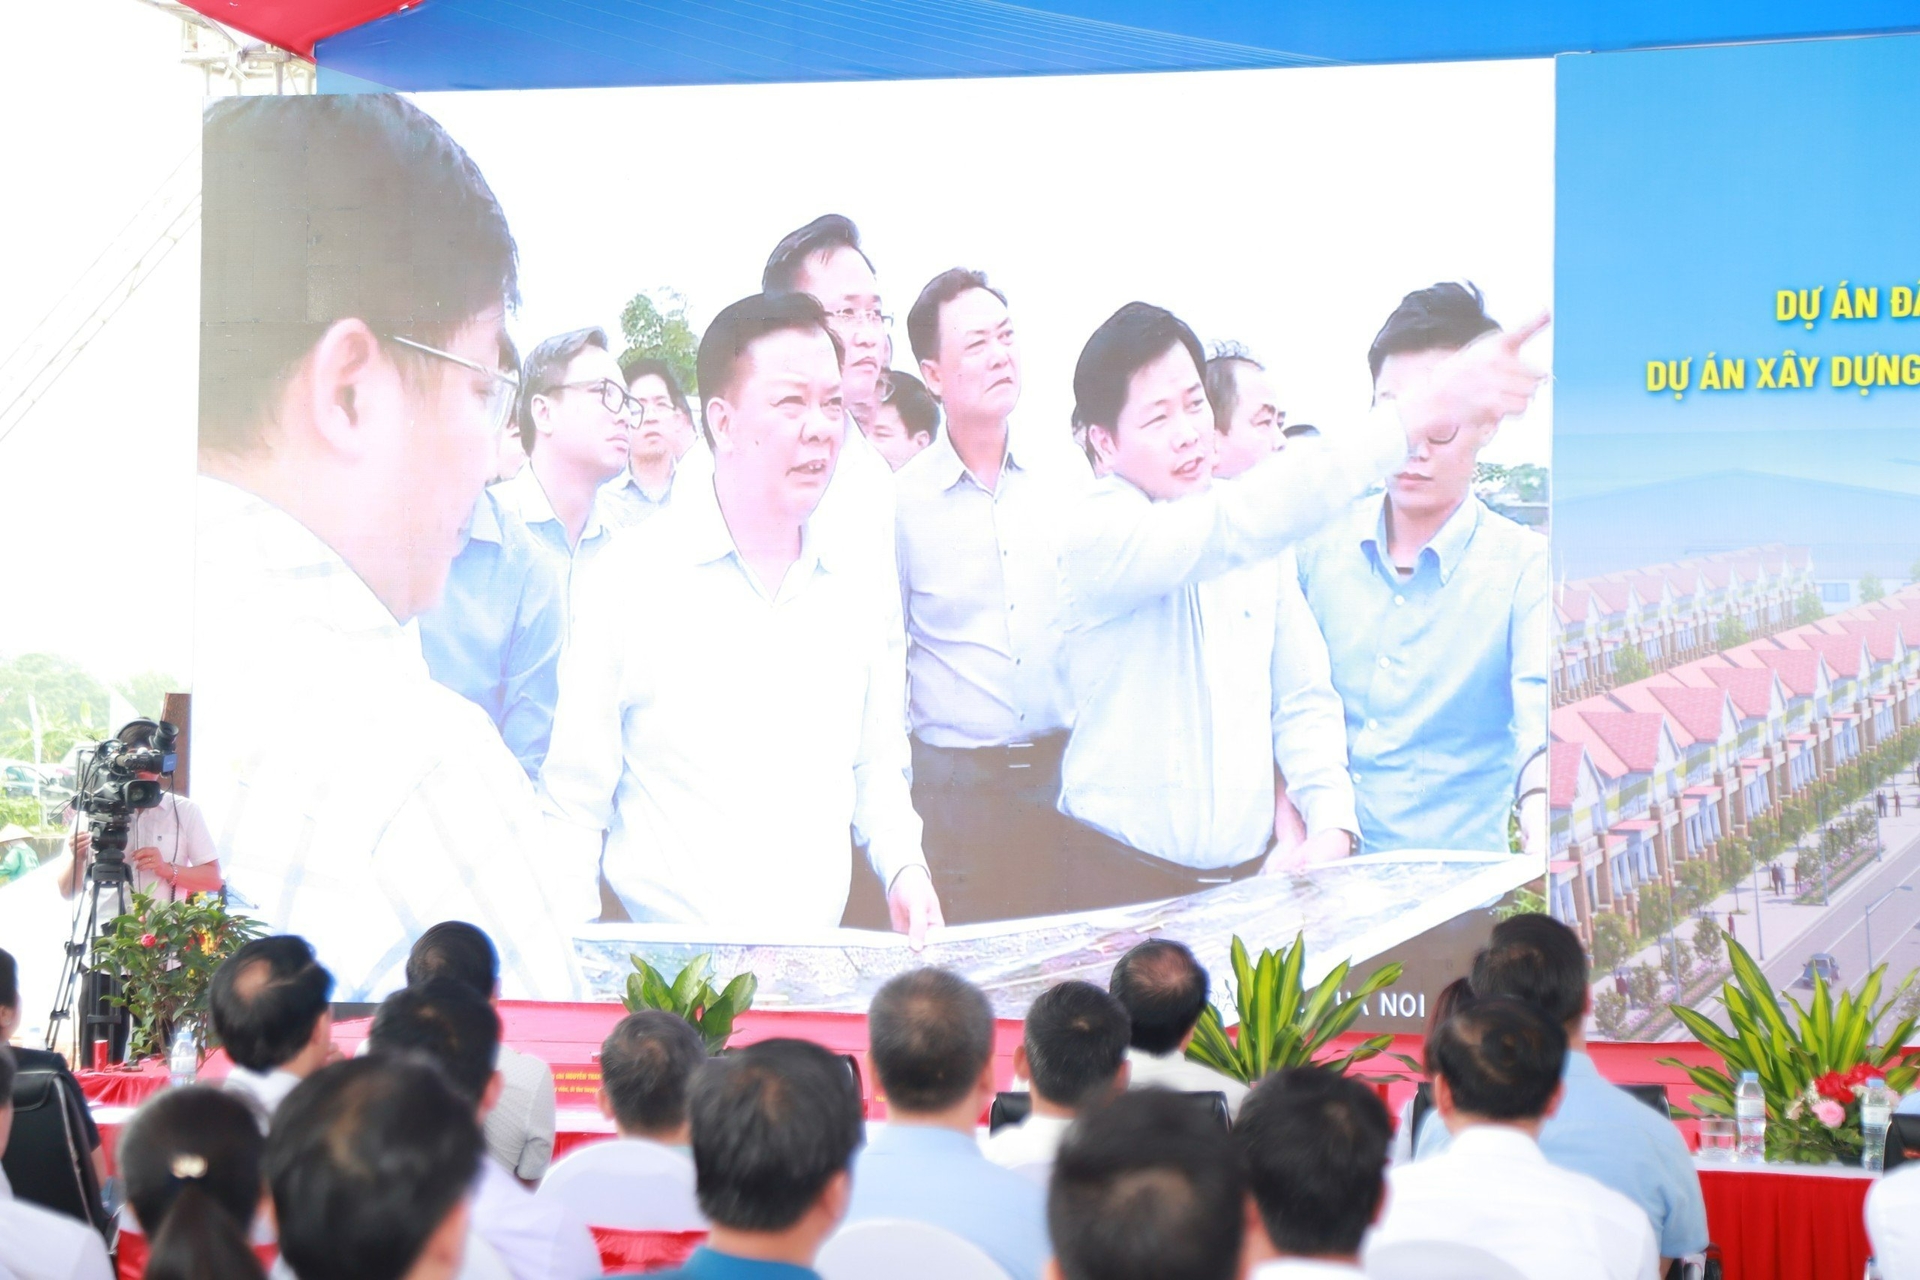 Lần đầu tiên, Ban Thường vụ Thành ủy Hà Nội ban hành chỉ thị riêng nhằm huy động sức mạnh tổng hợp của cả hệ thống chính trị và nhân dân thực hiện công tác giải phóng mặt bằng, tái định cư một dự án.